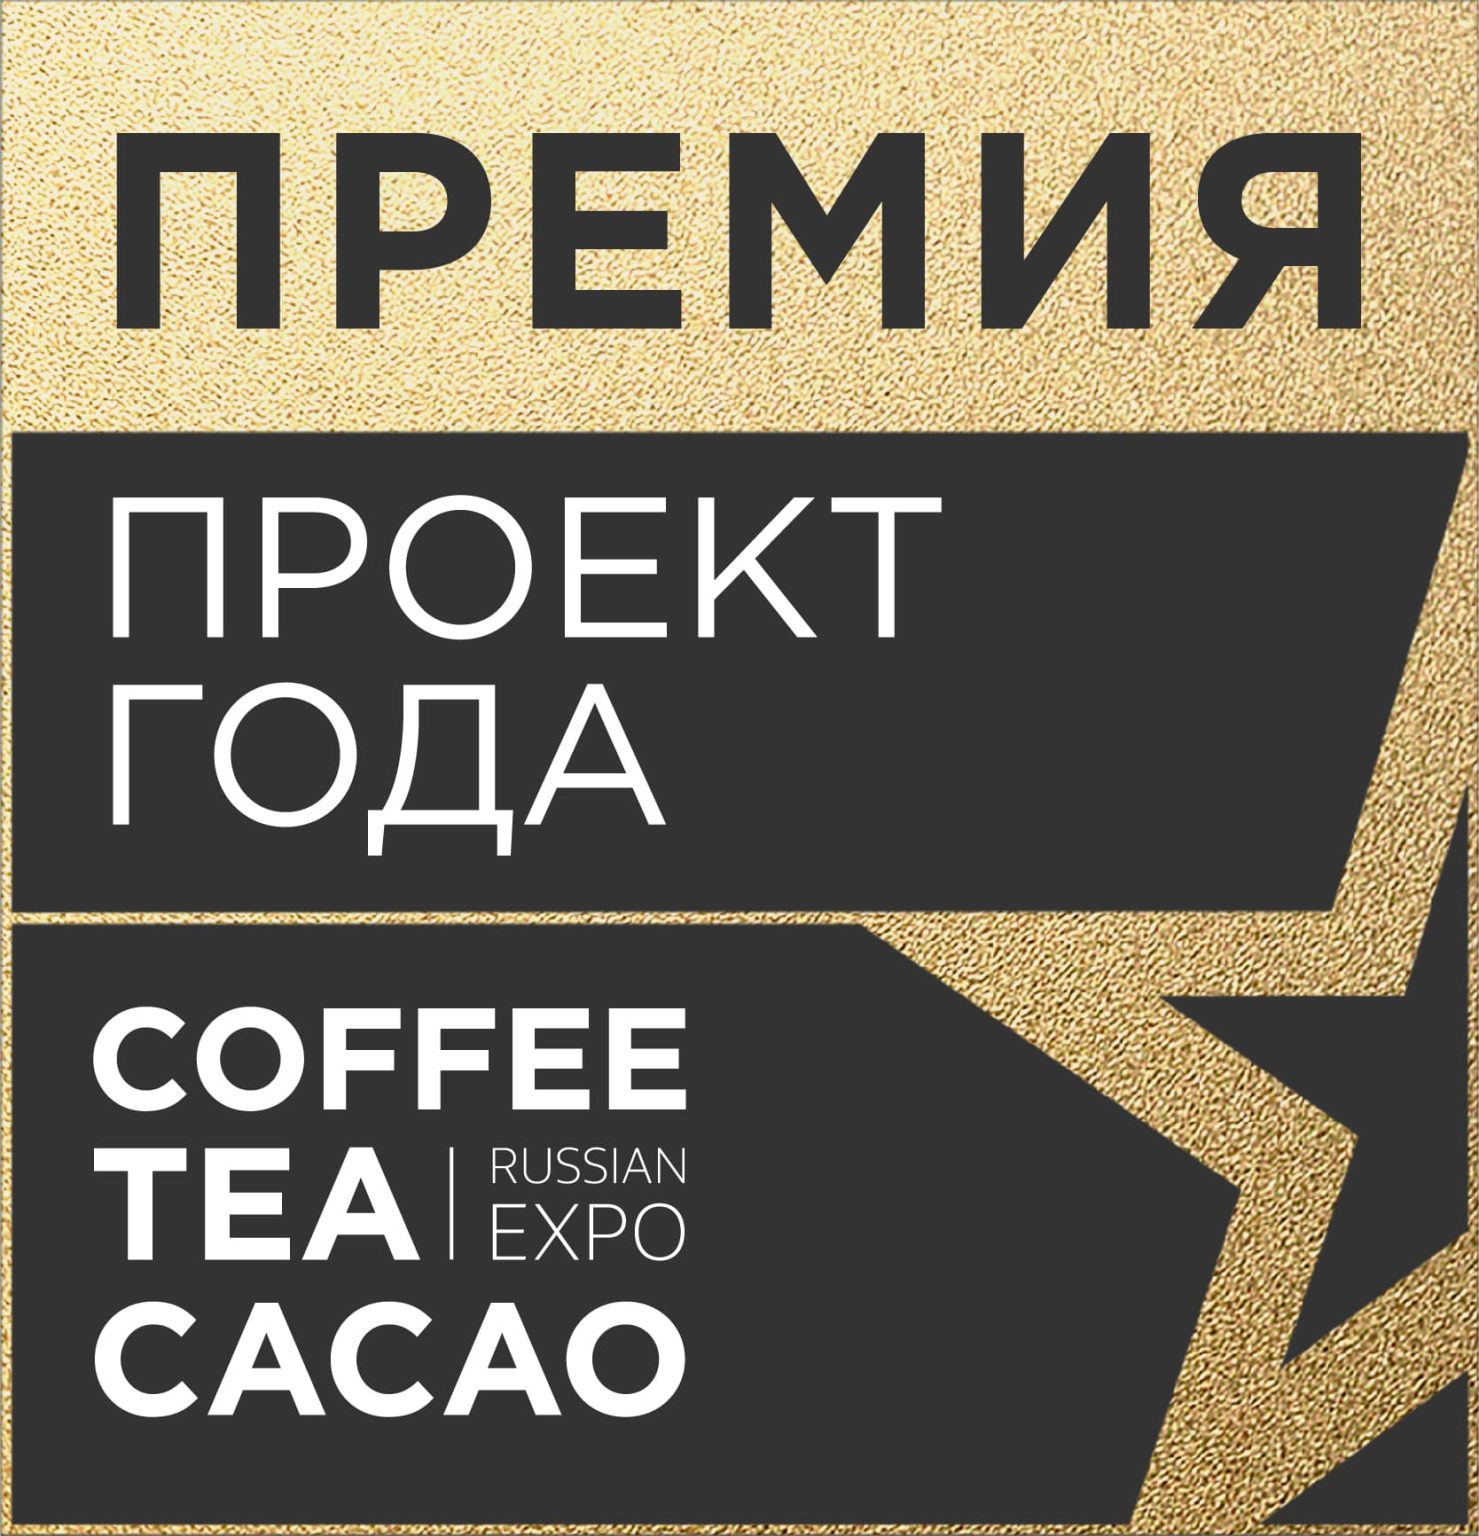 Cacao expo. Проект года. Coffee Tea Cacao Expo. Coffee Tea Cacao Expo logo.